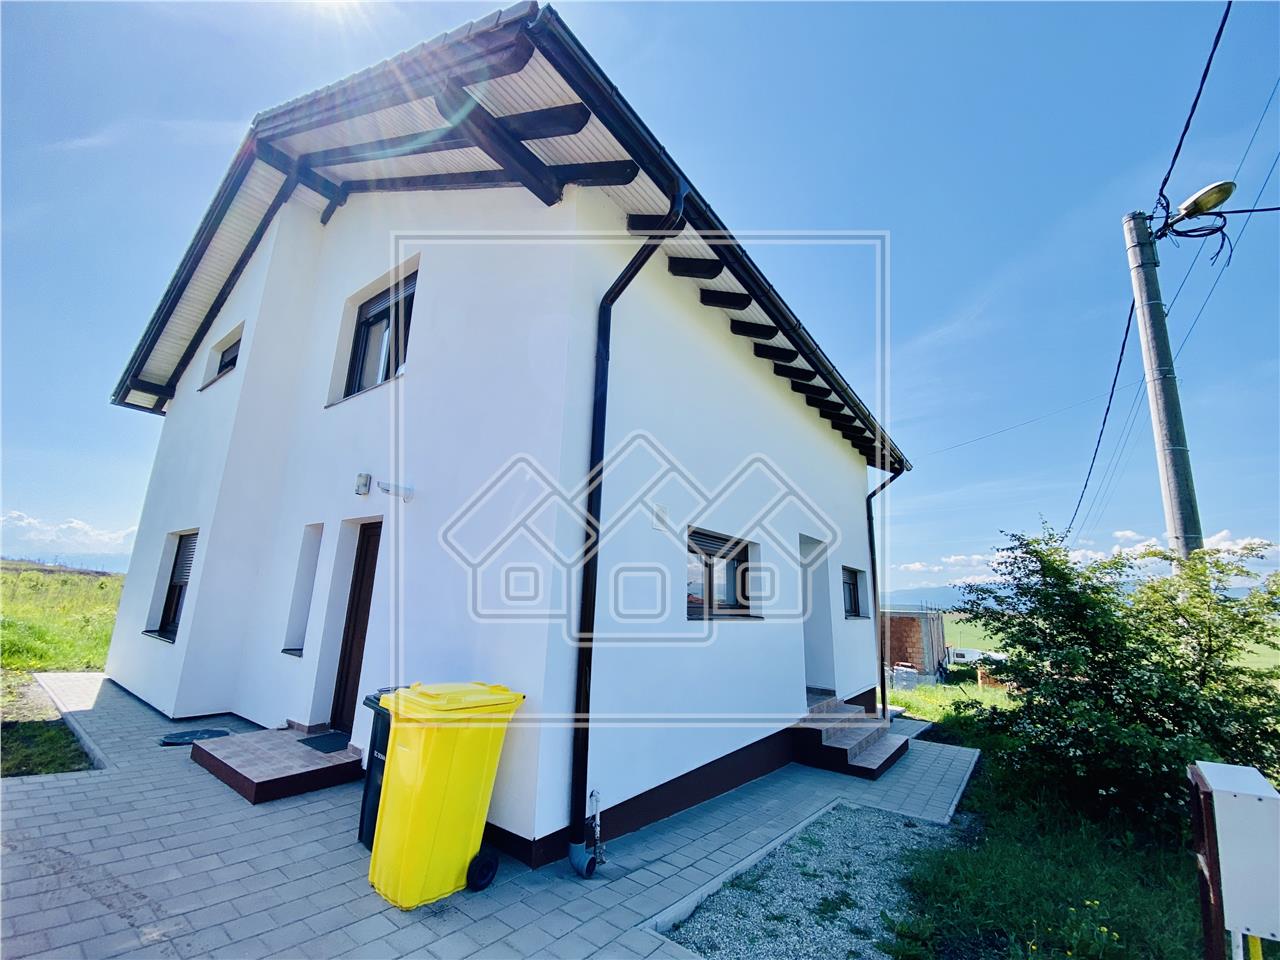 Haus zum Verkauf in Sibiu - Einzelperson - 135 Quadratmeter - Bayern S